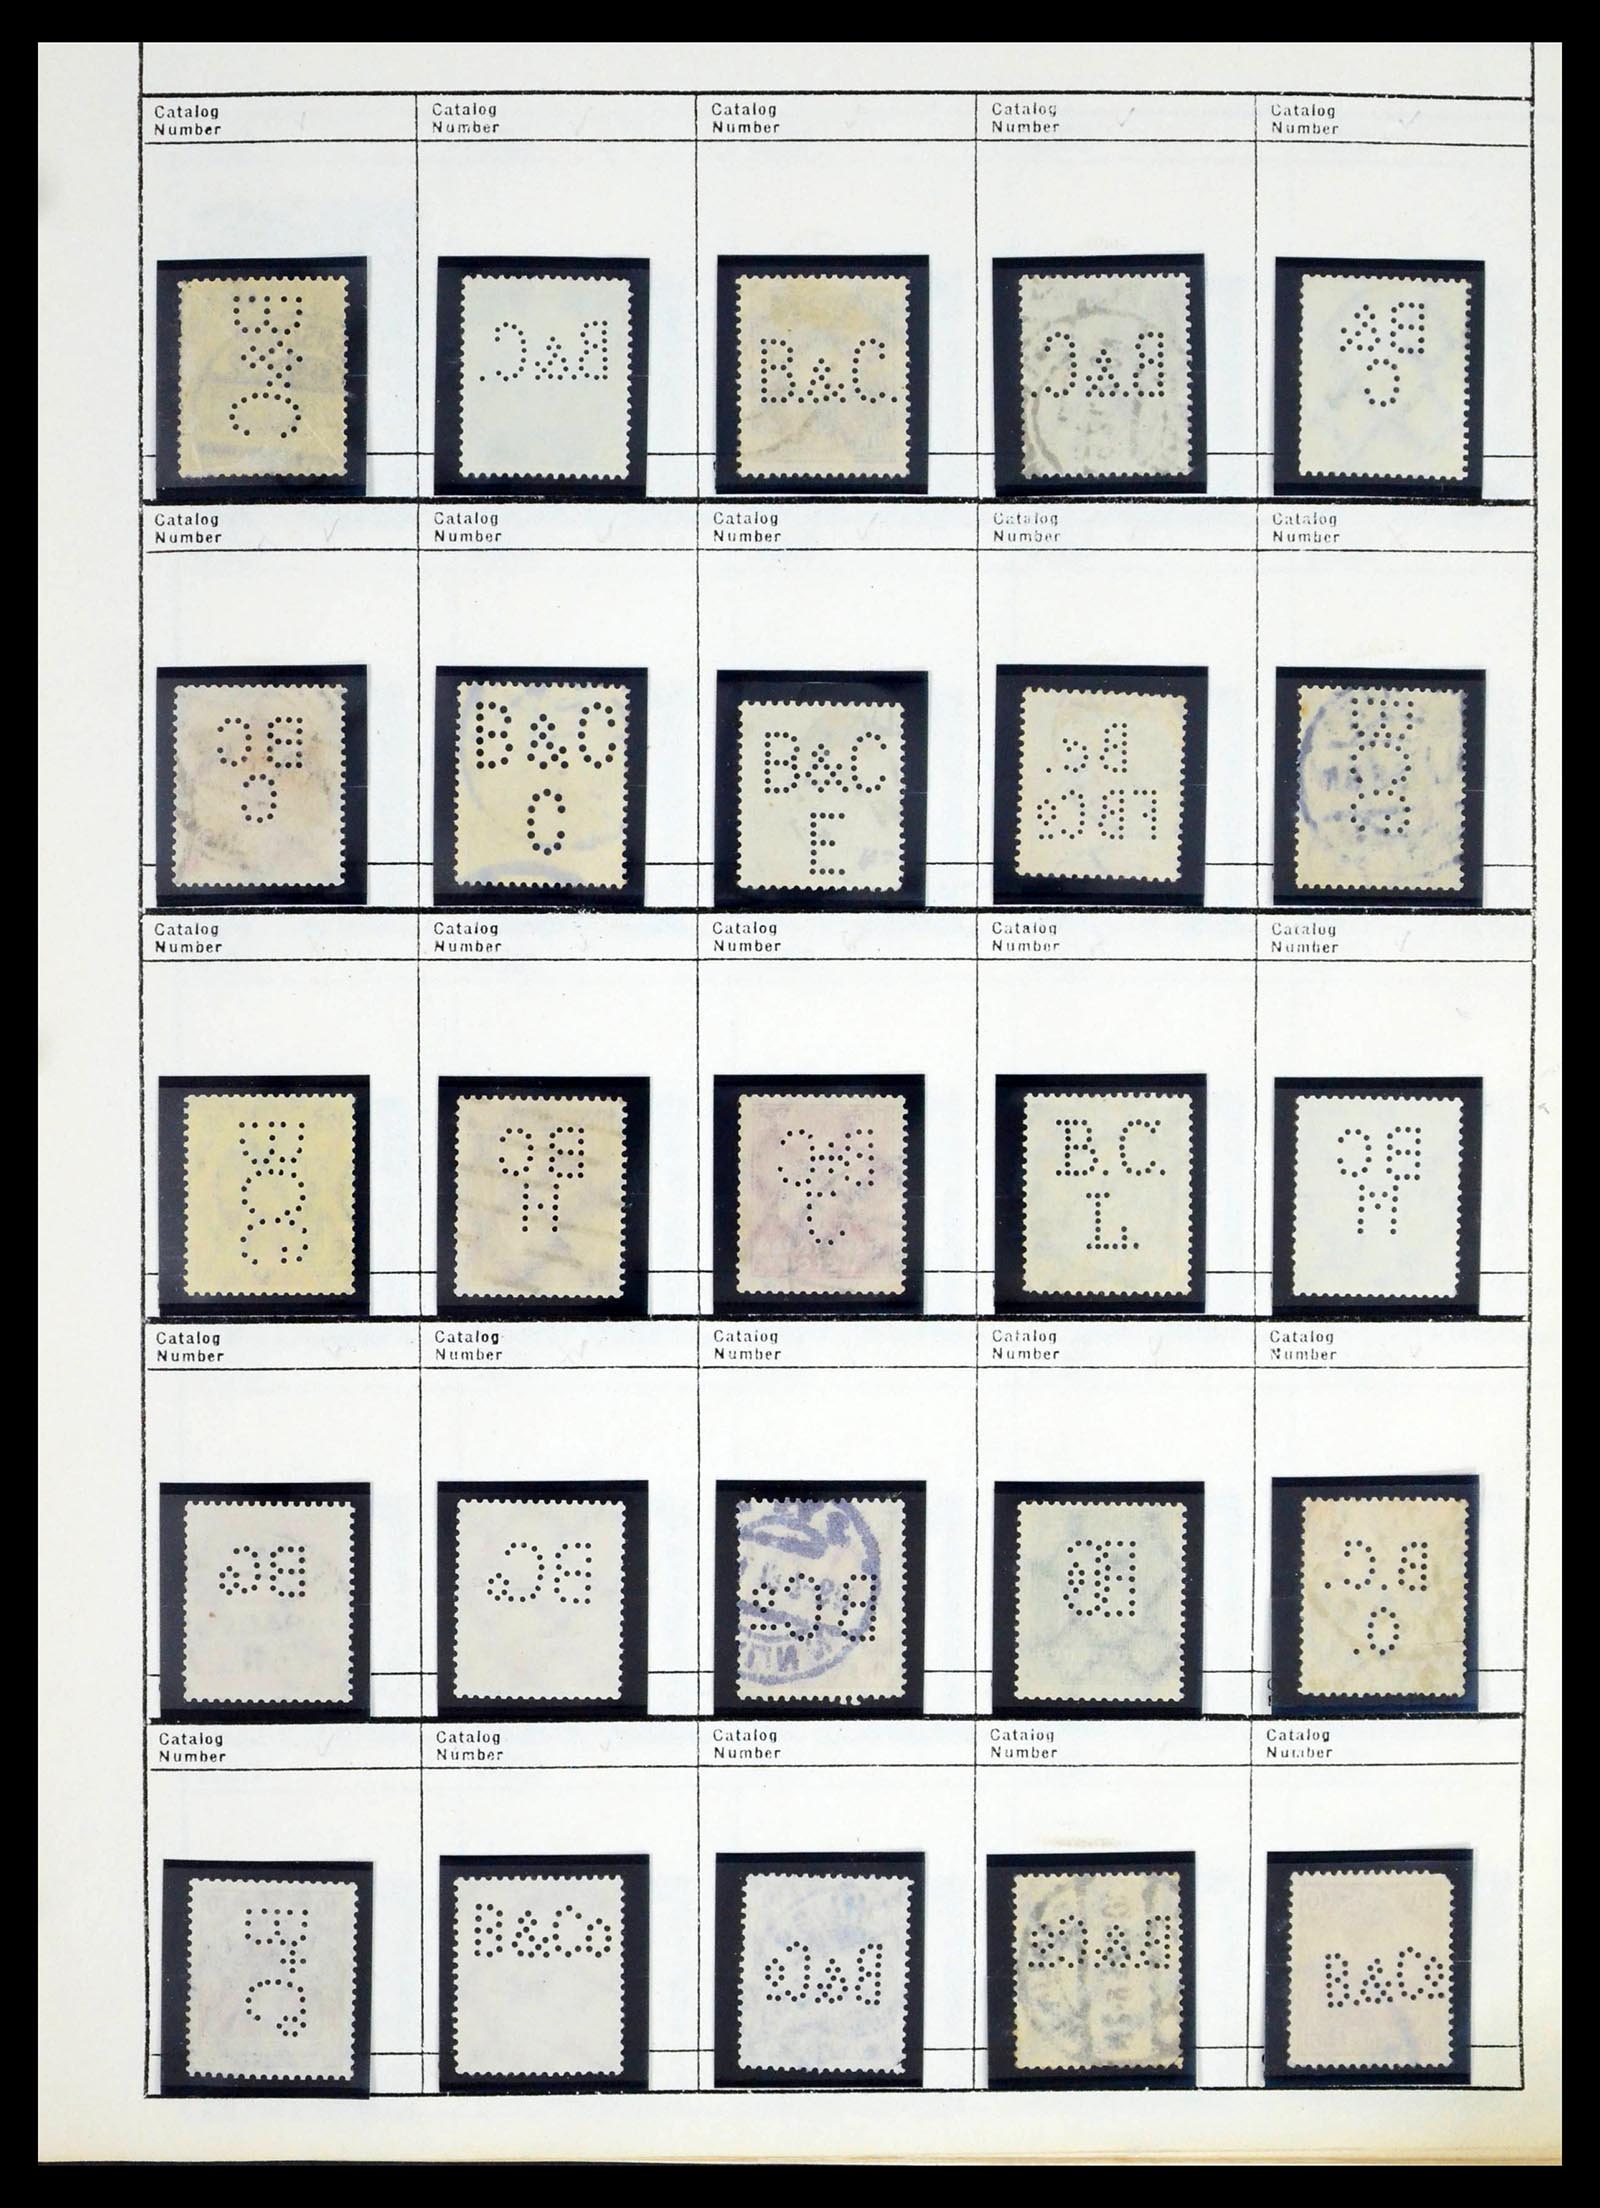 39480 0058 - Stamp collection 39480 German Reich perfins 1880-1955.